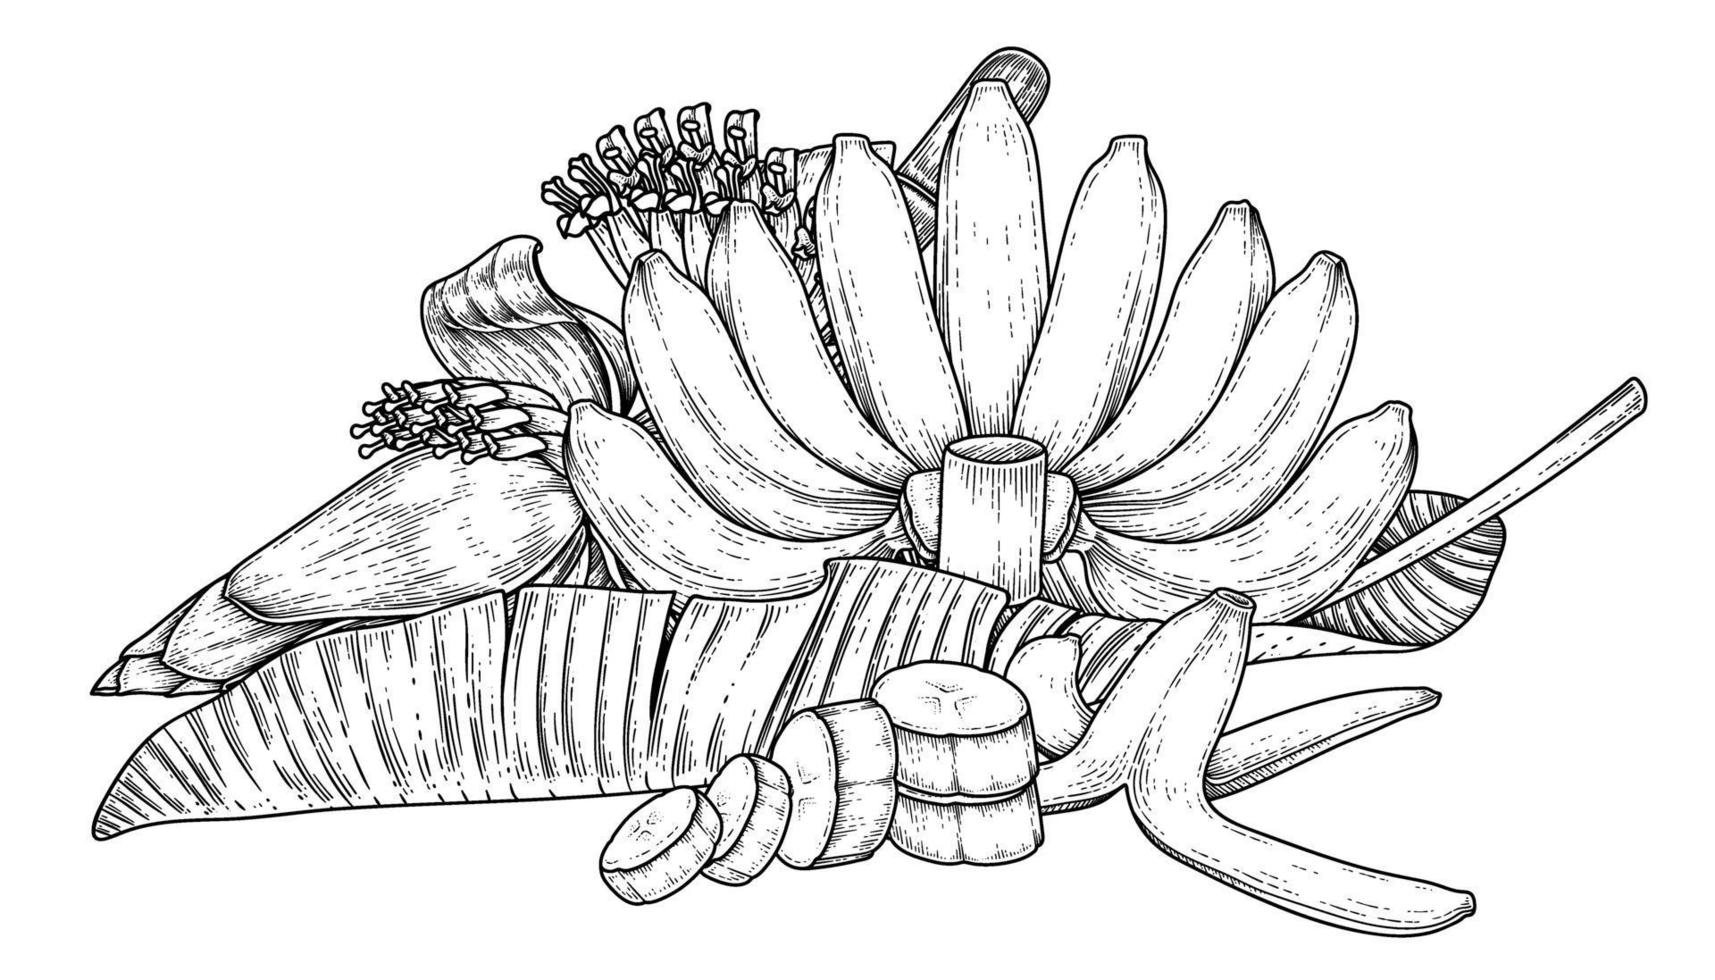 Satz gezeichnete Skizze des Bananenfruchtblattes und der Bananenblütenhand gezeichnet vektor